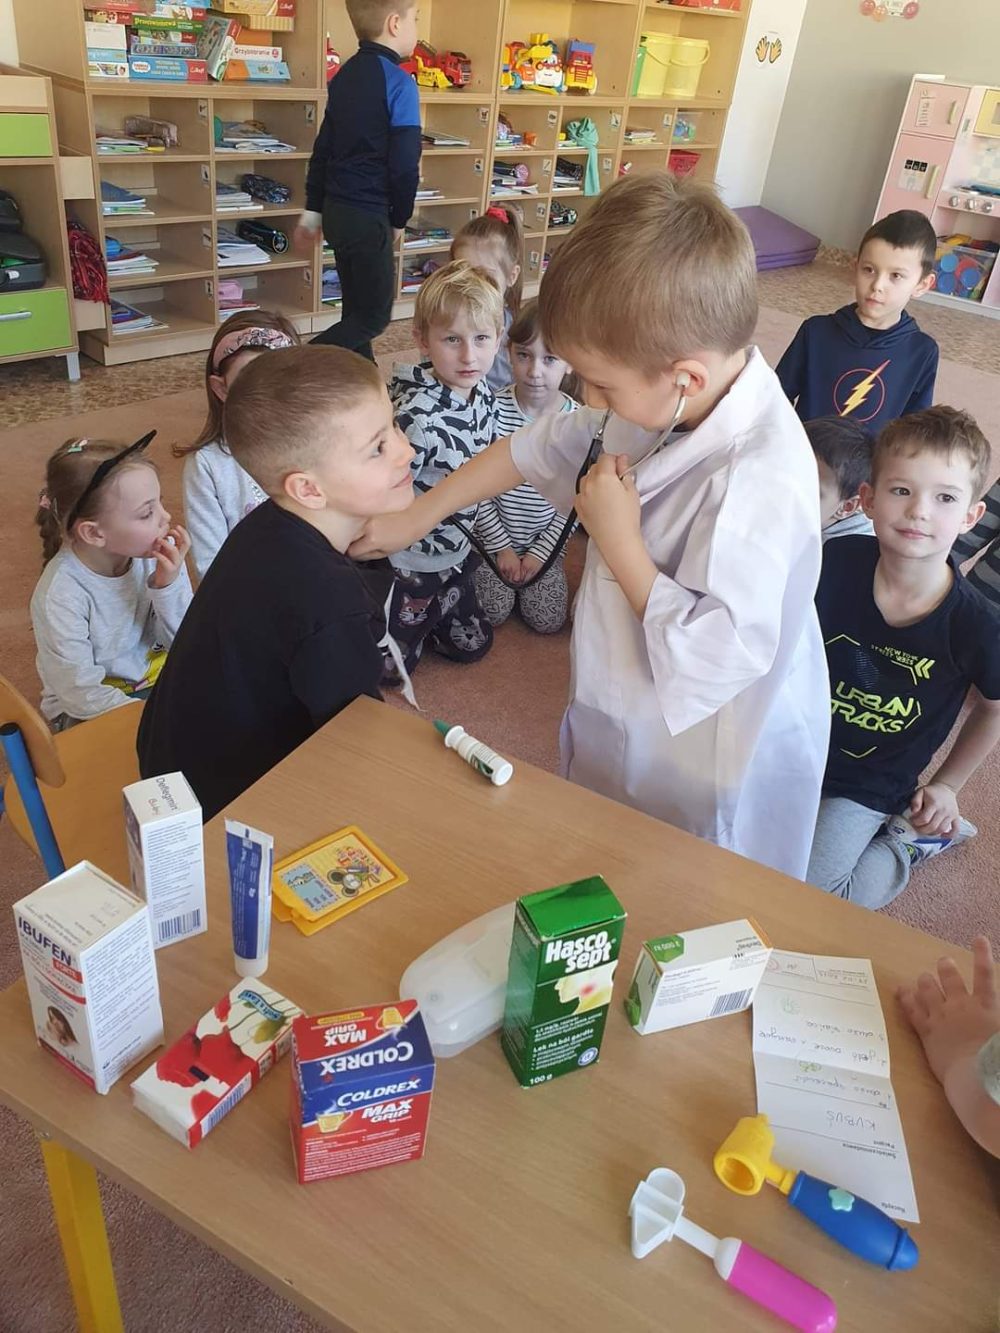 chłopiec przebrany w biały fartuch lekarski bada stetoskopem swojego kolegę z grupy, który przybrał rolę pacjenta.